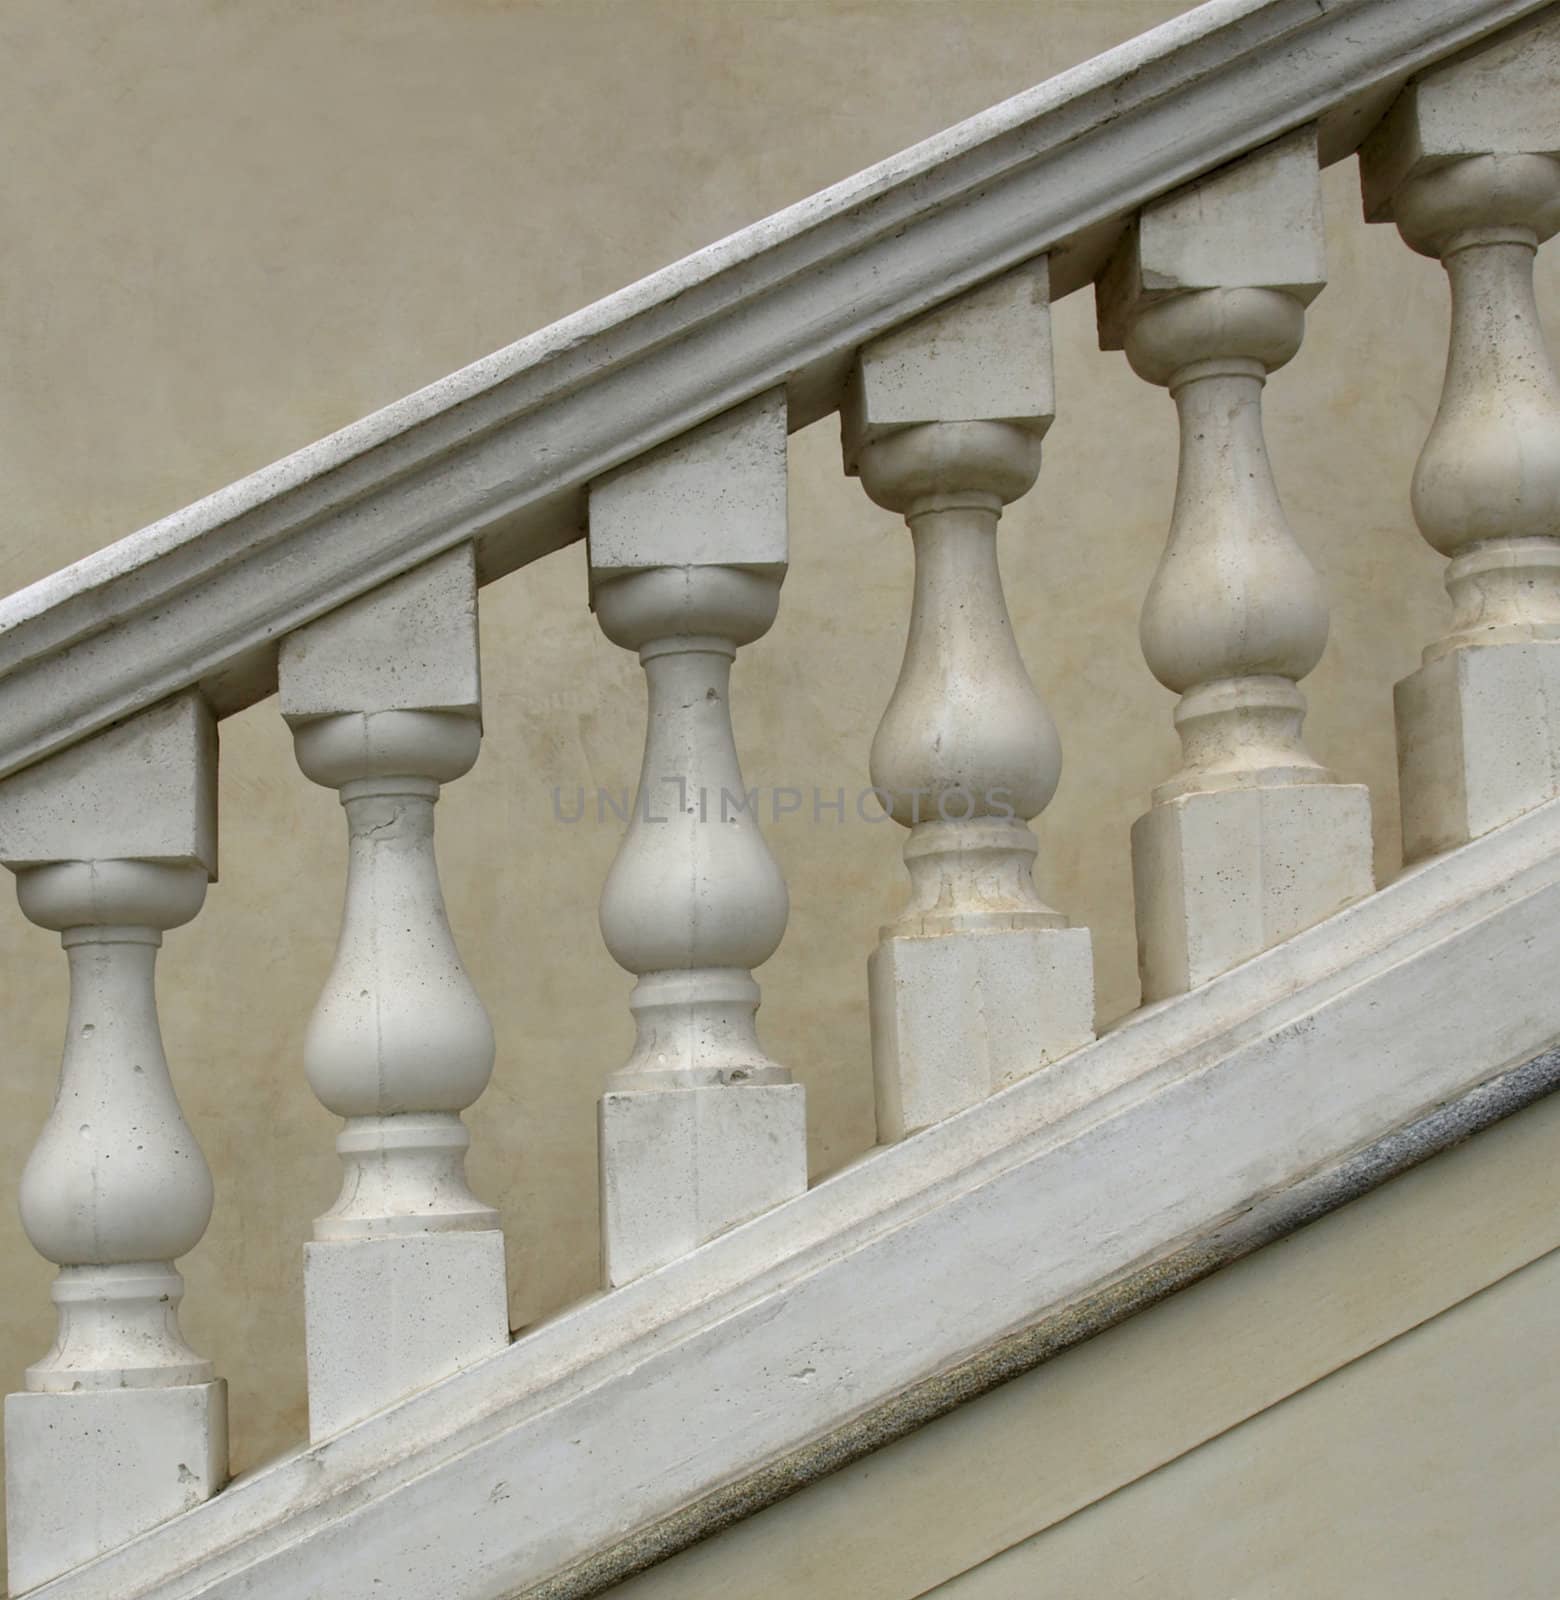 Stone baroque balaustrade as a staircase handrail